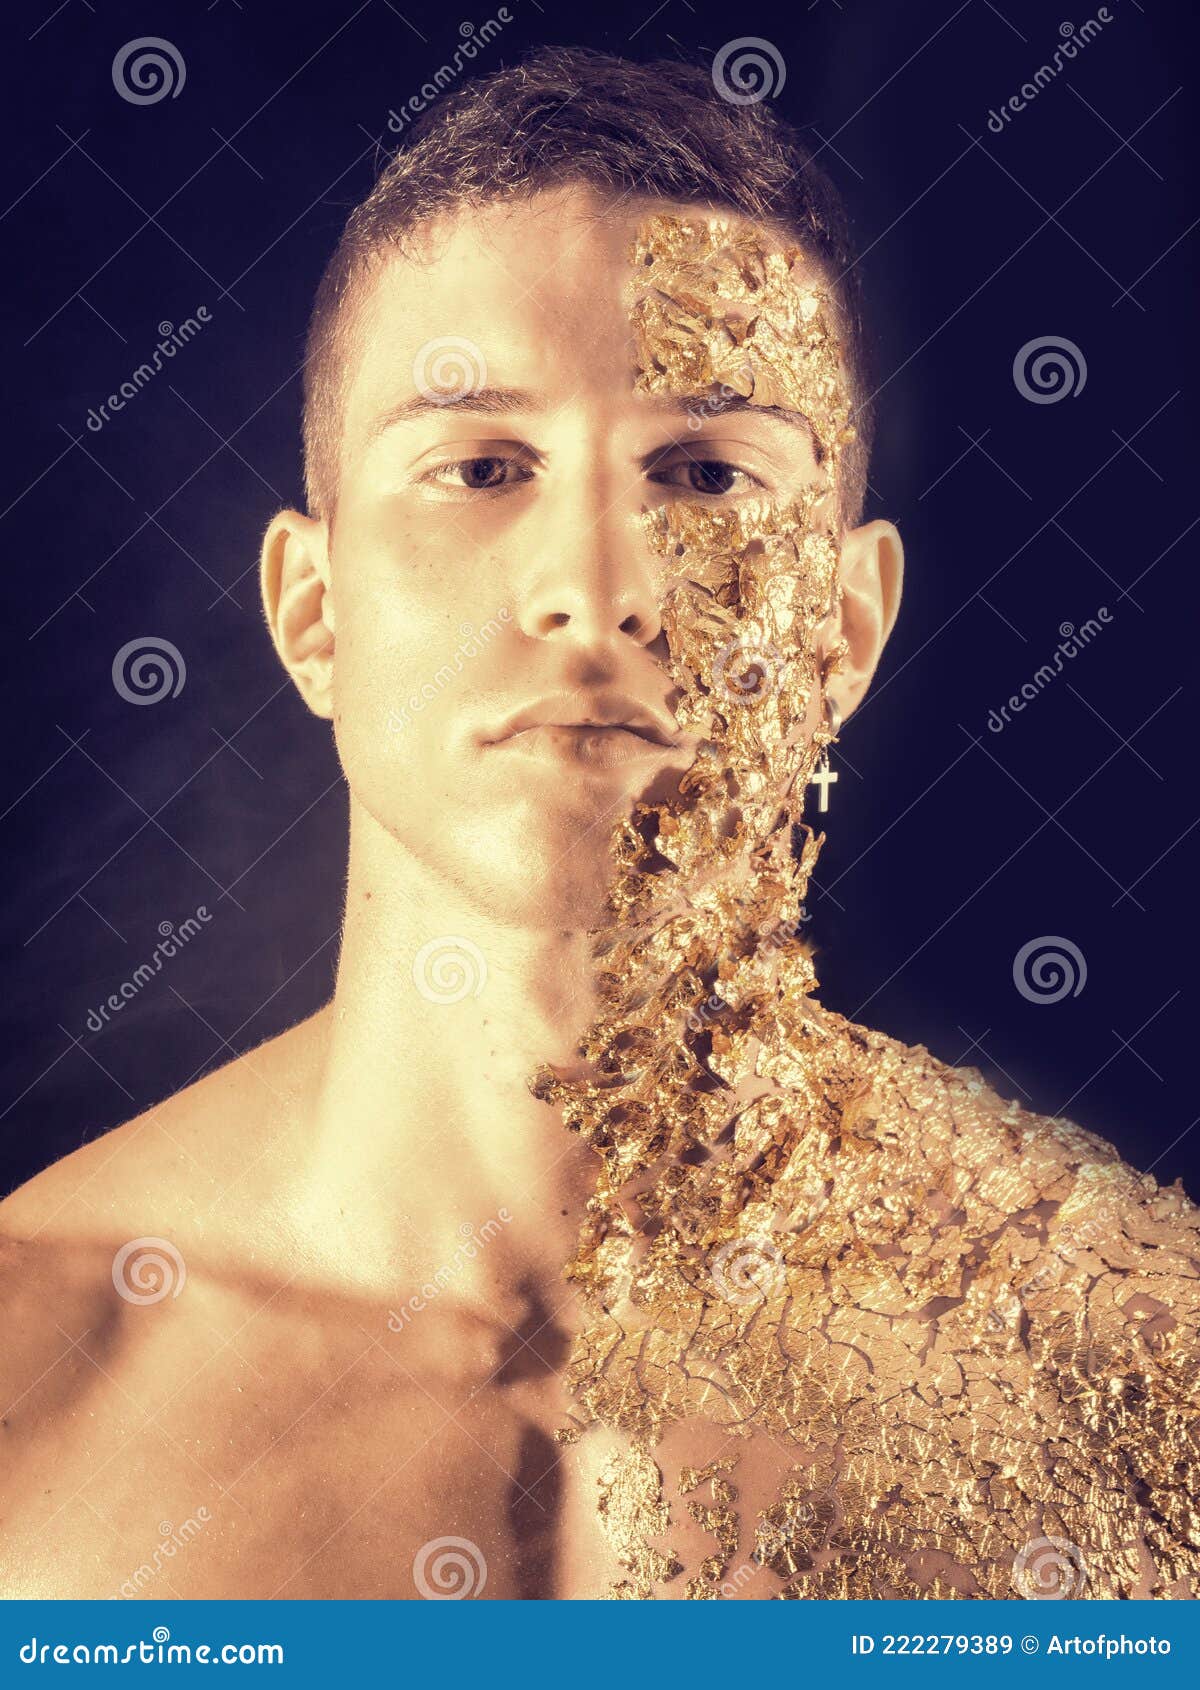 Jeune Homme Musclé Couvert De Taches D'or Image stock - Image du